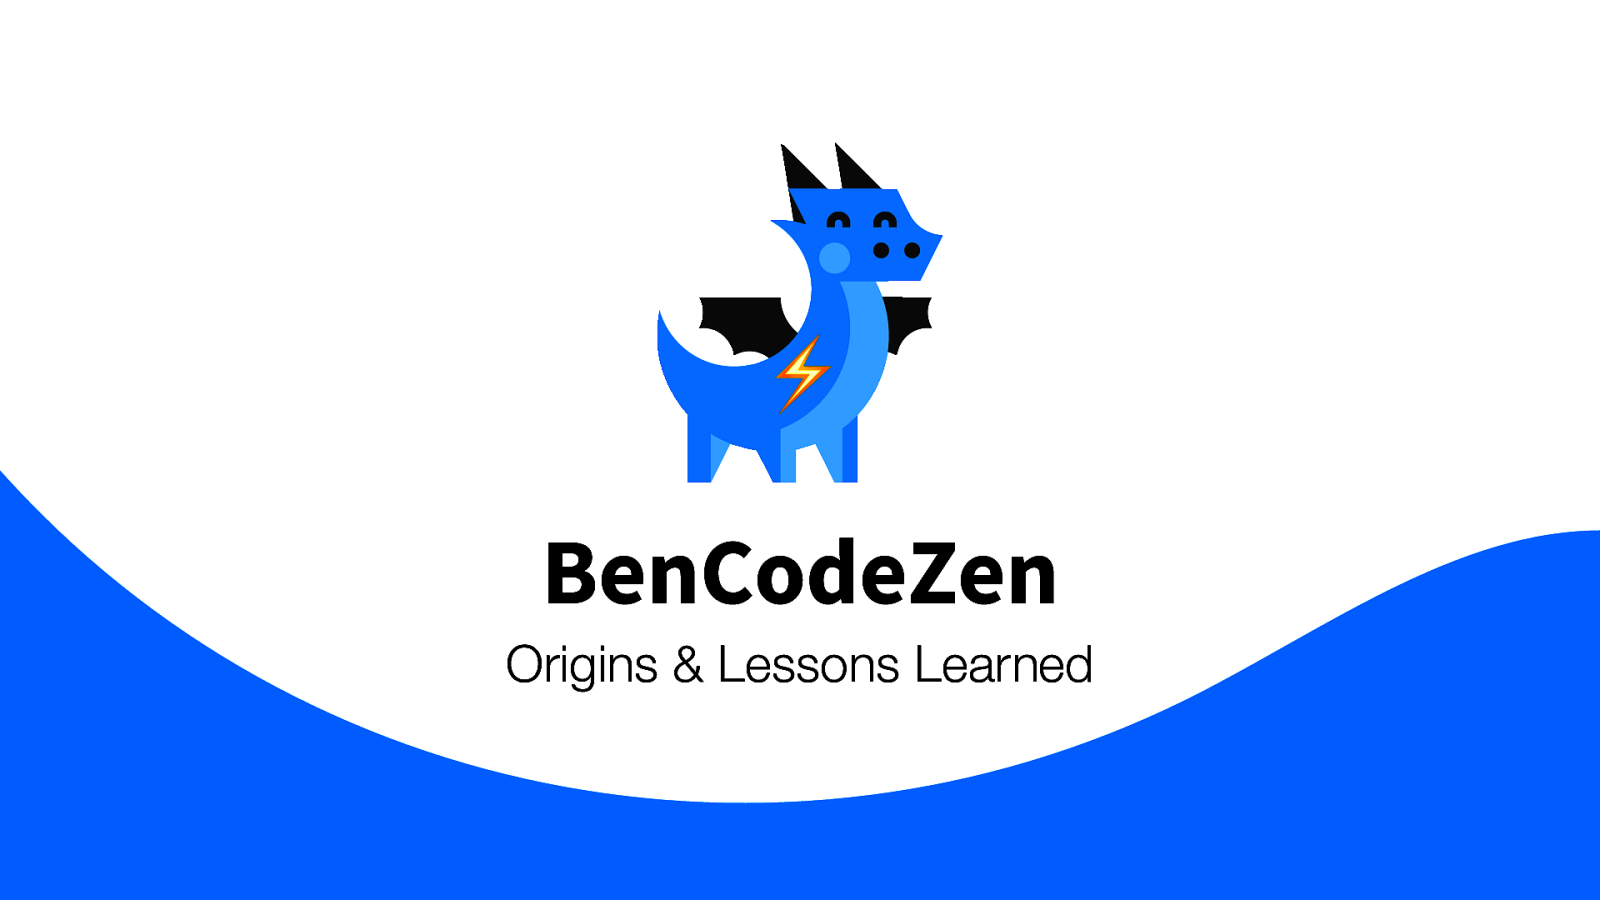 BenCodeZen: Origins